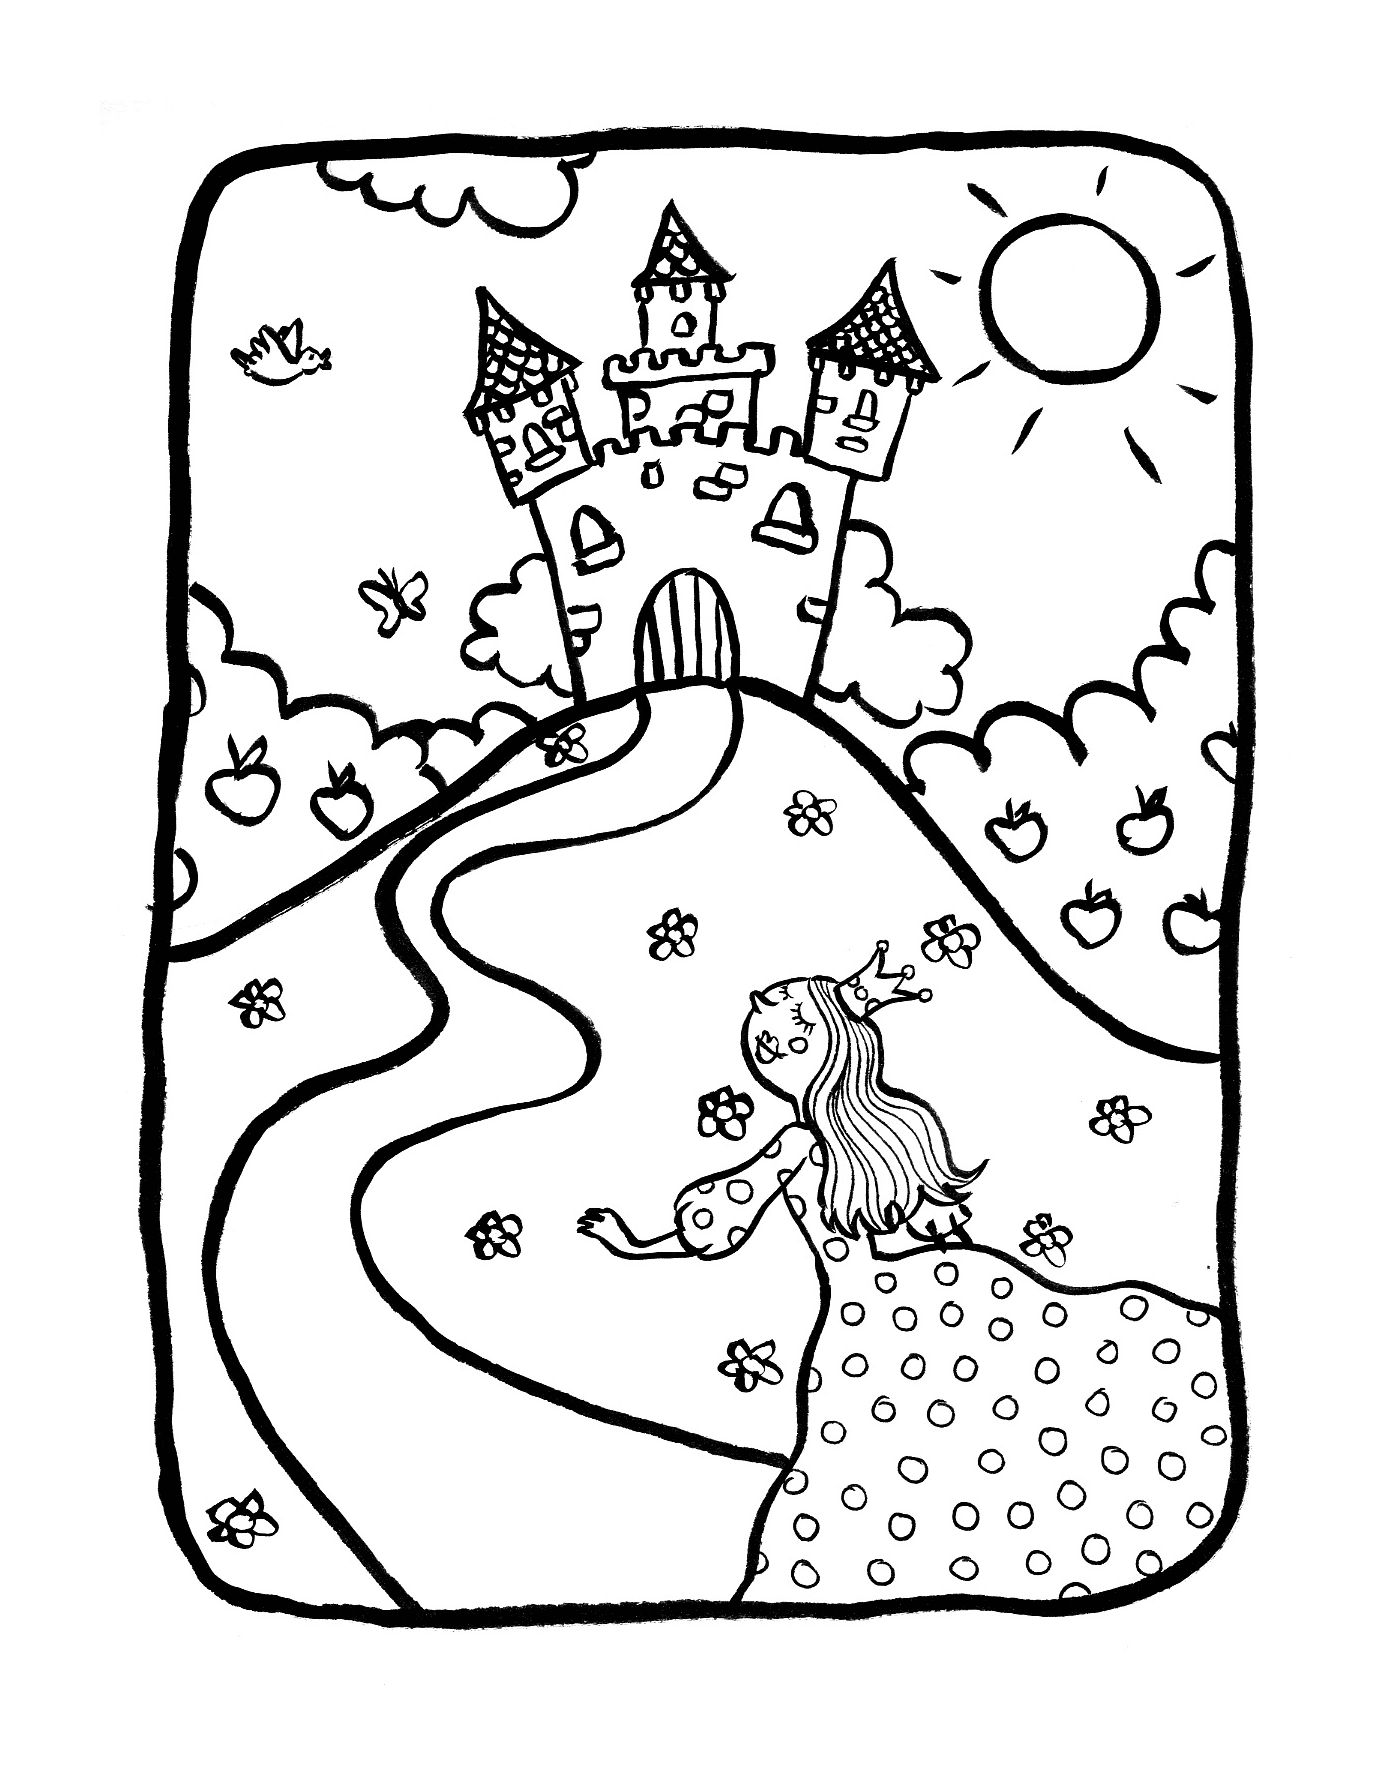  Una ragazza davanti a un castello con le principesse 